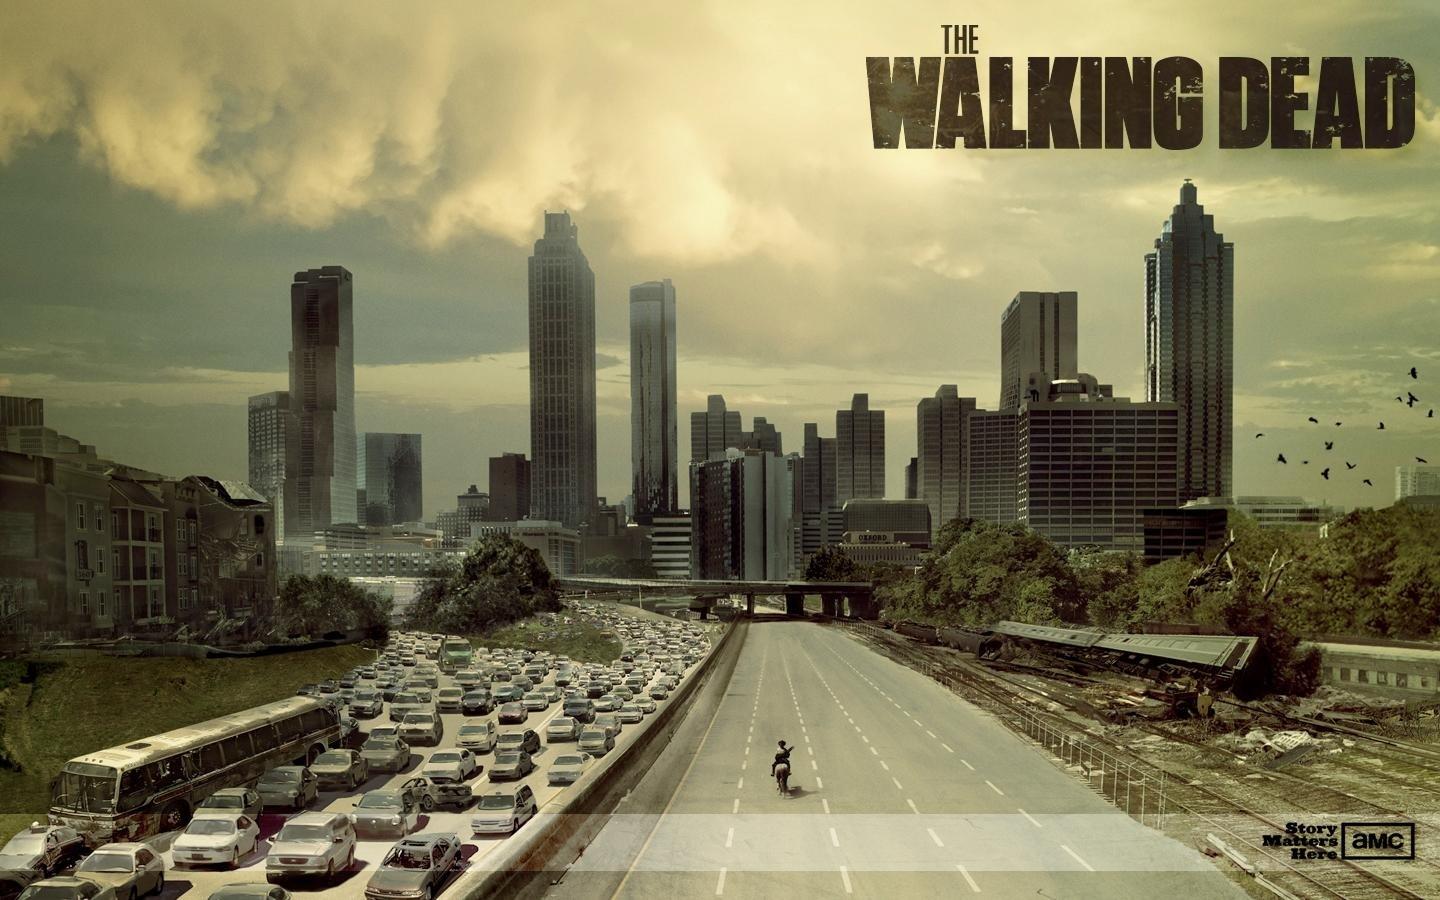 Series nổi tiếng The Walking Dead sẽ kết thúc trong năm nay và mở ra một tương lai mới